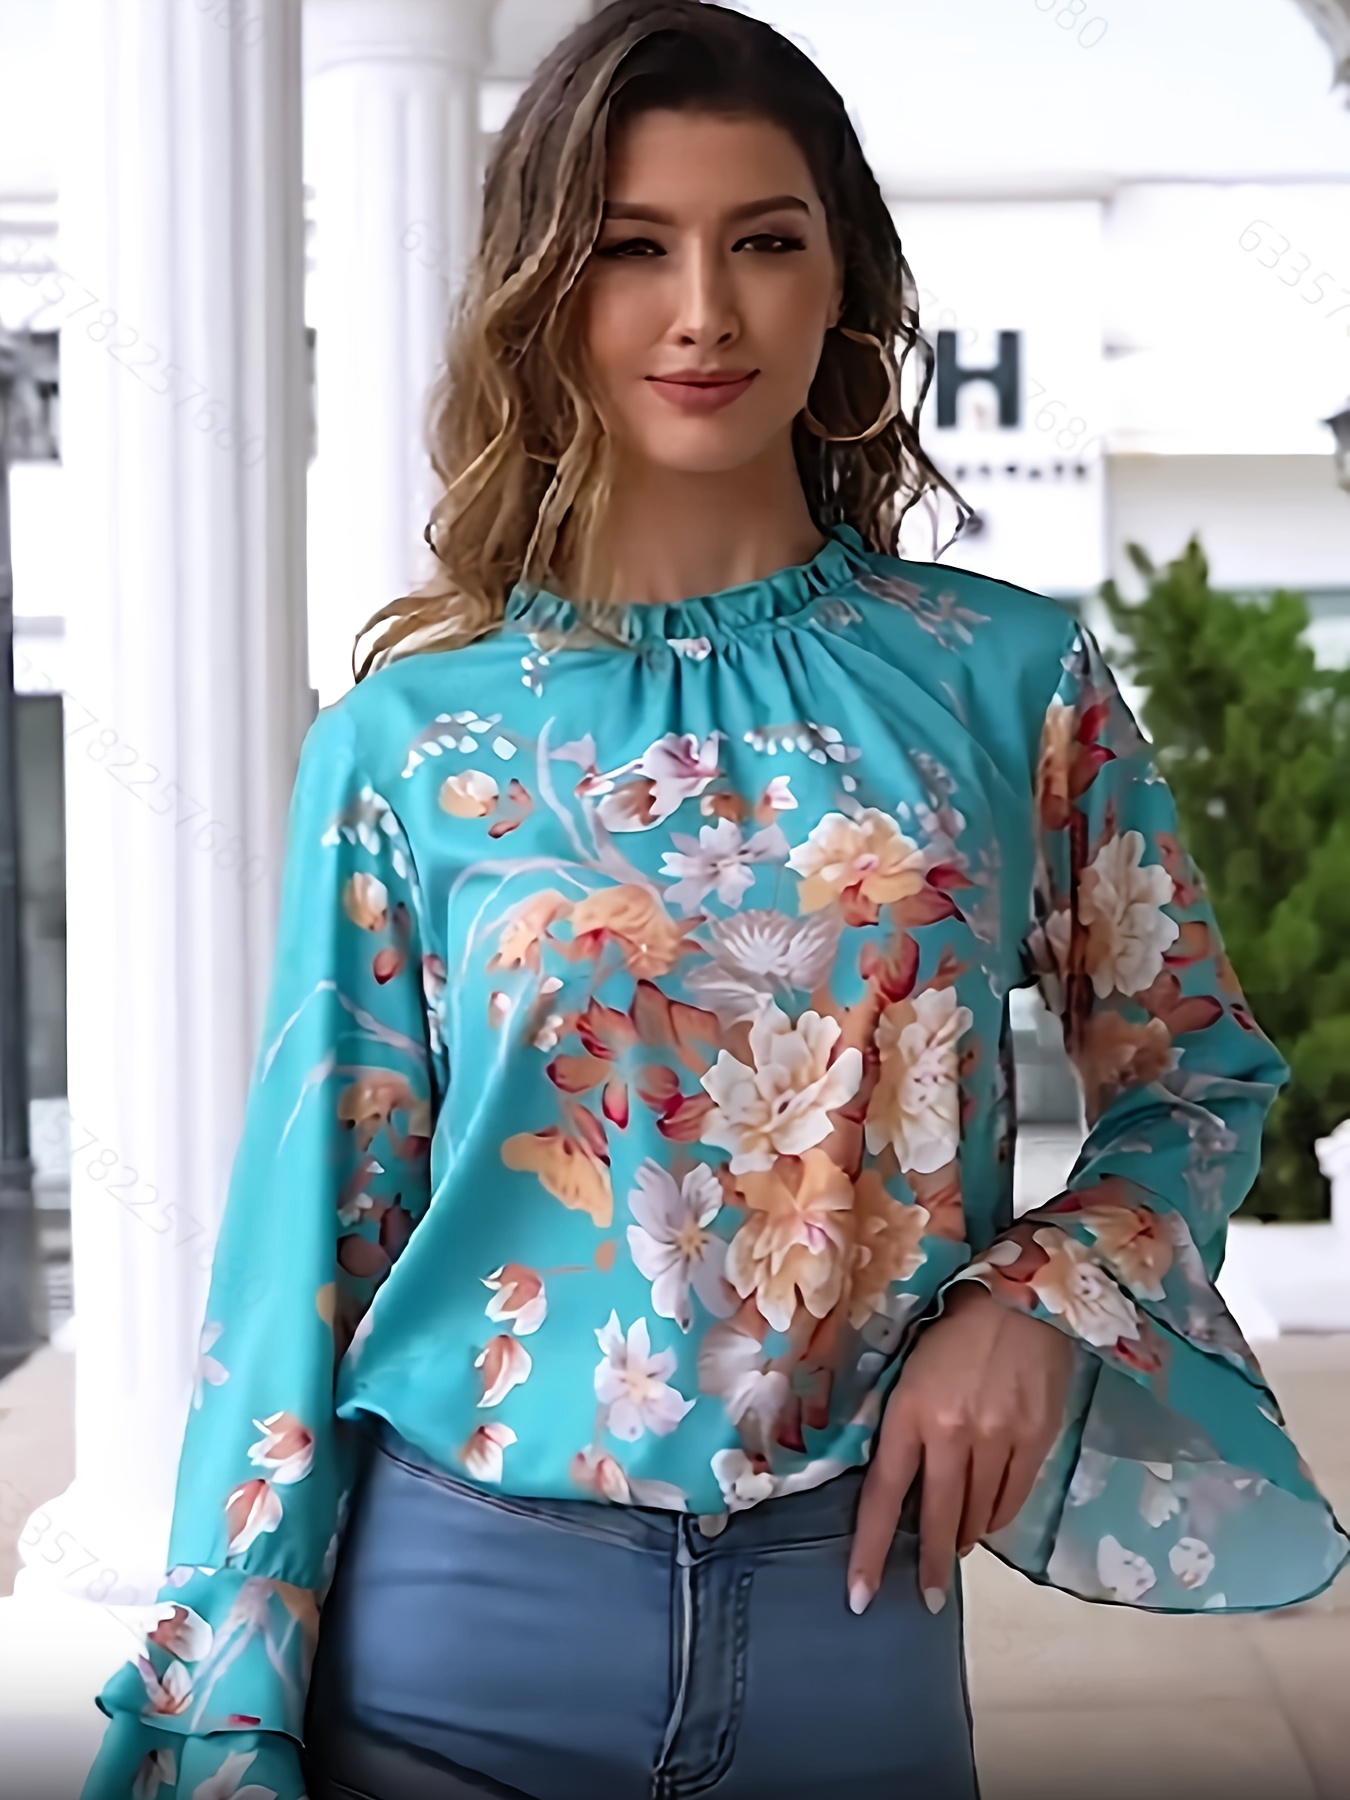 Camisa estampada floral de gola alta para mulheres, blusas casuais